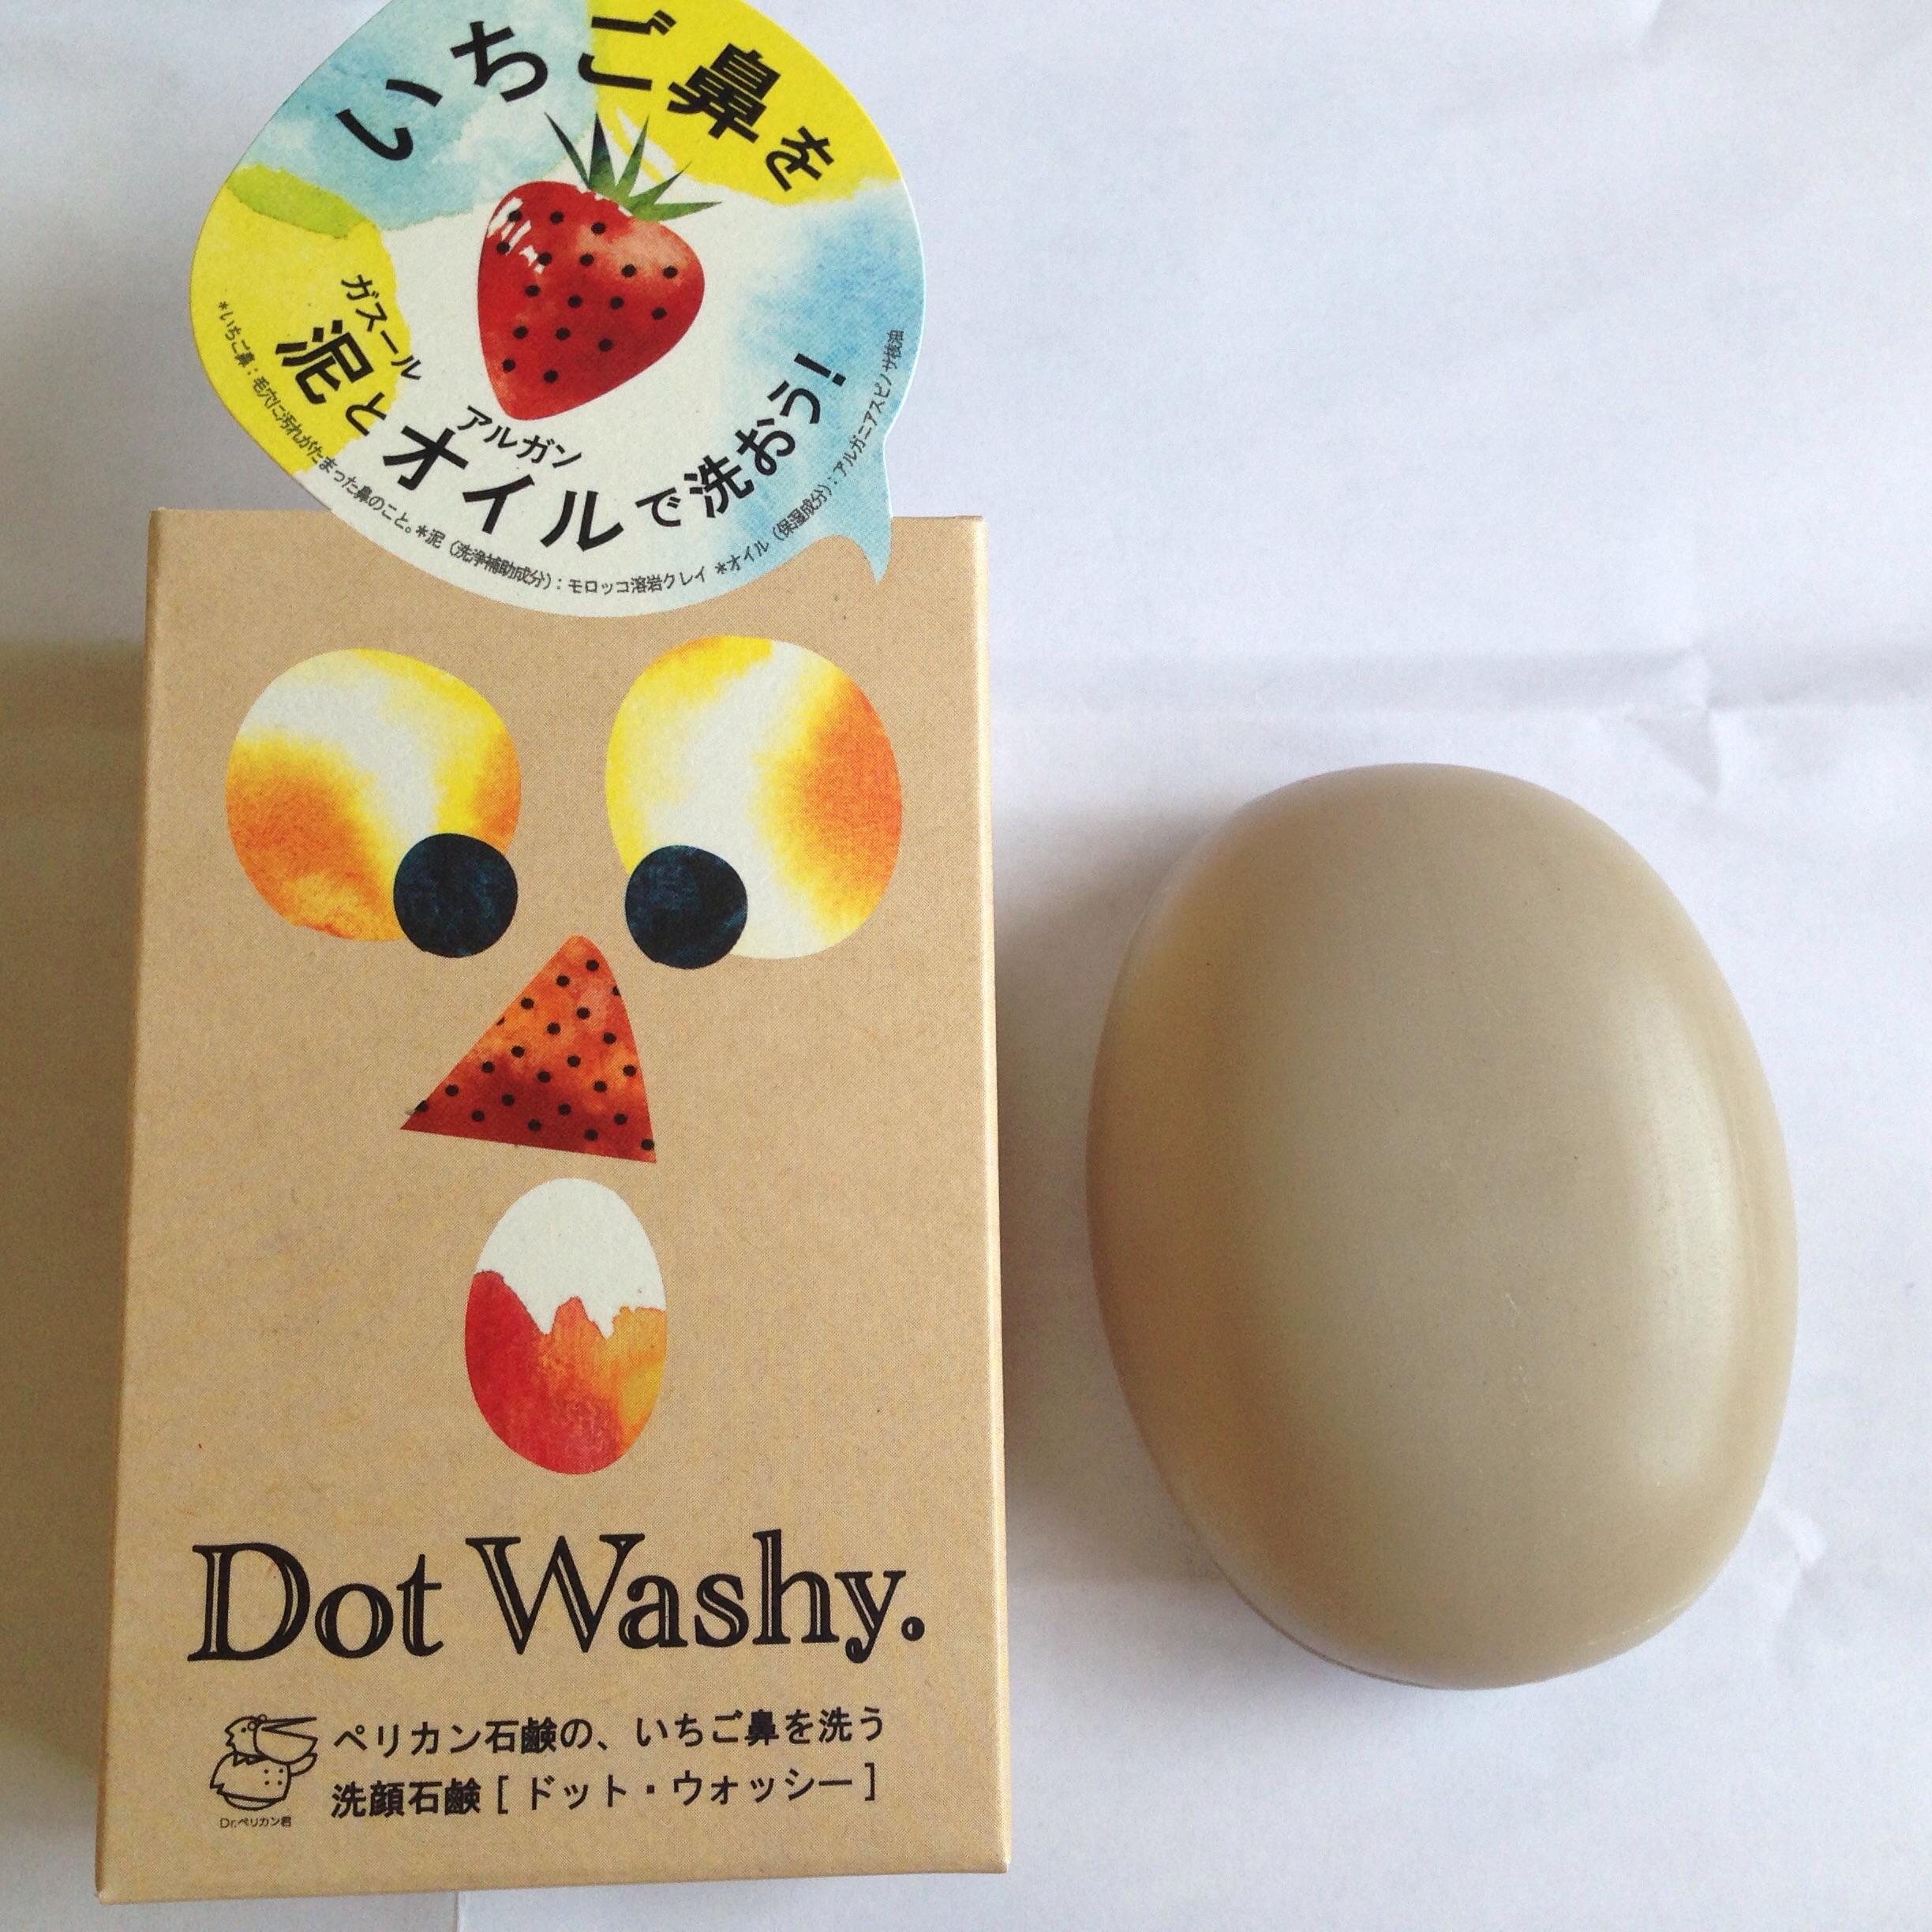 Dot Washy là sản phẩm được tạo nên bằng 2 chất là đất sét tự nhiên và dầu quả Argan